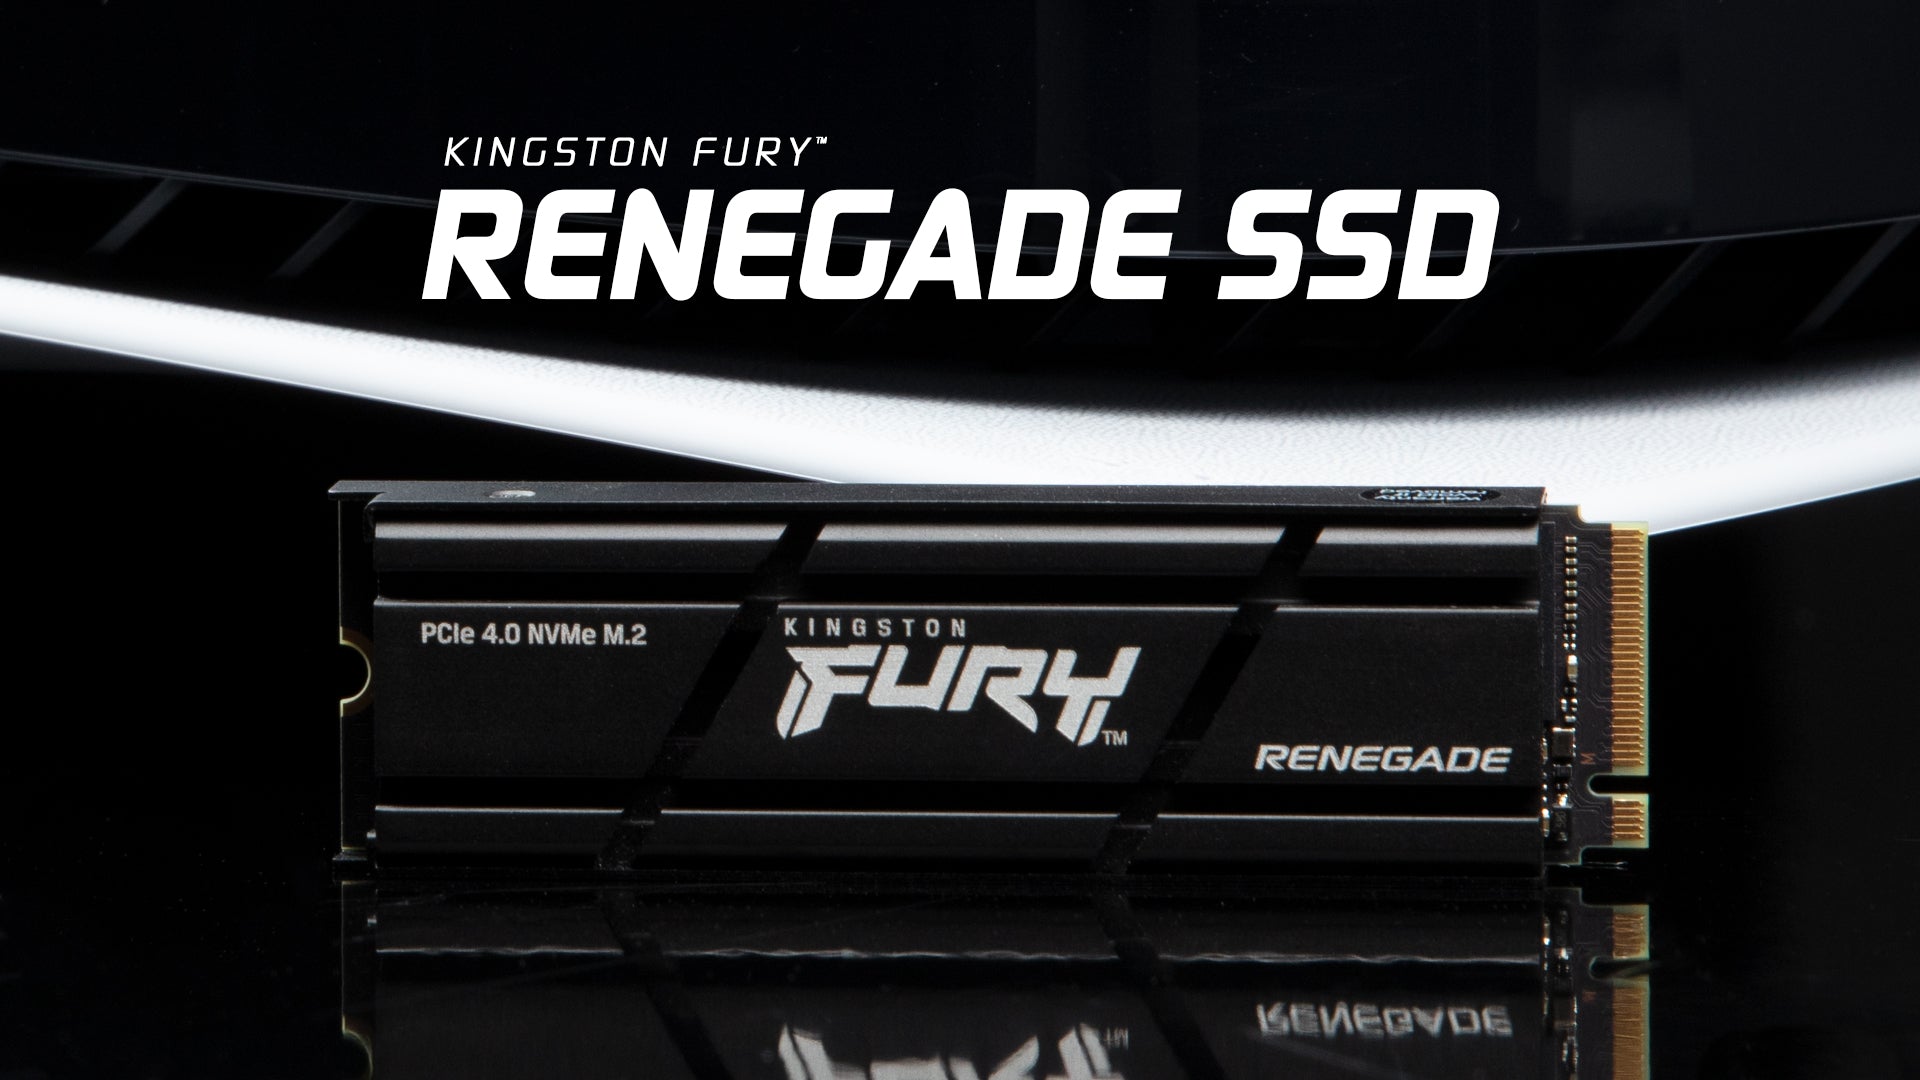 specielt civilisere Tilgængelig Kingston FURY Renegade NVMe SSD - Elevate Gaming Performance up to 7300MB/s  – Kingston Technology